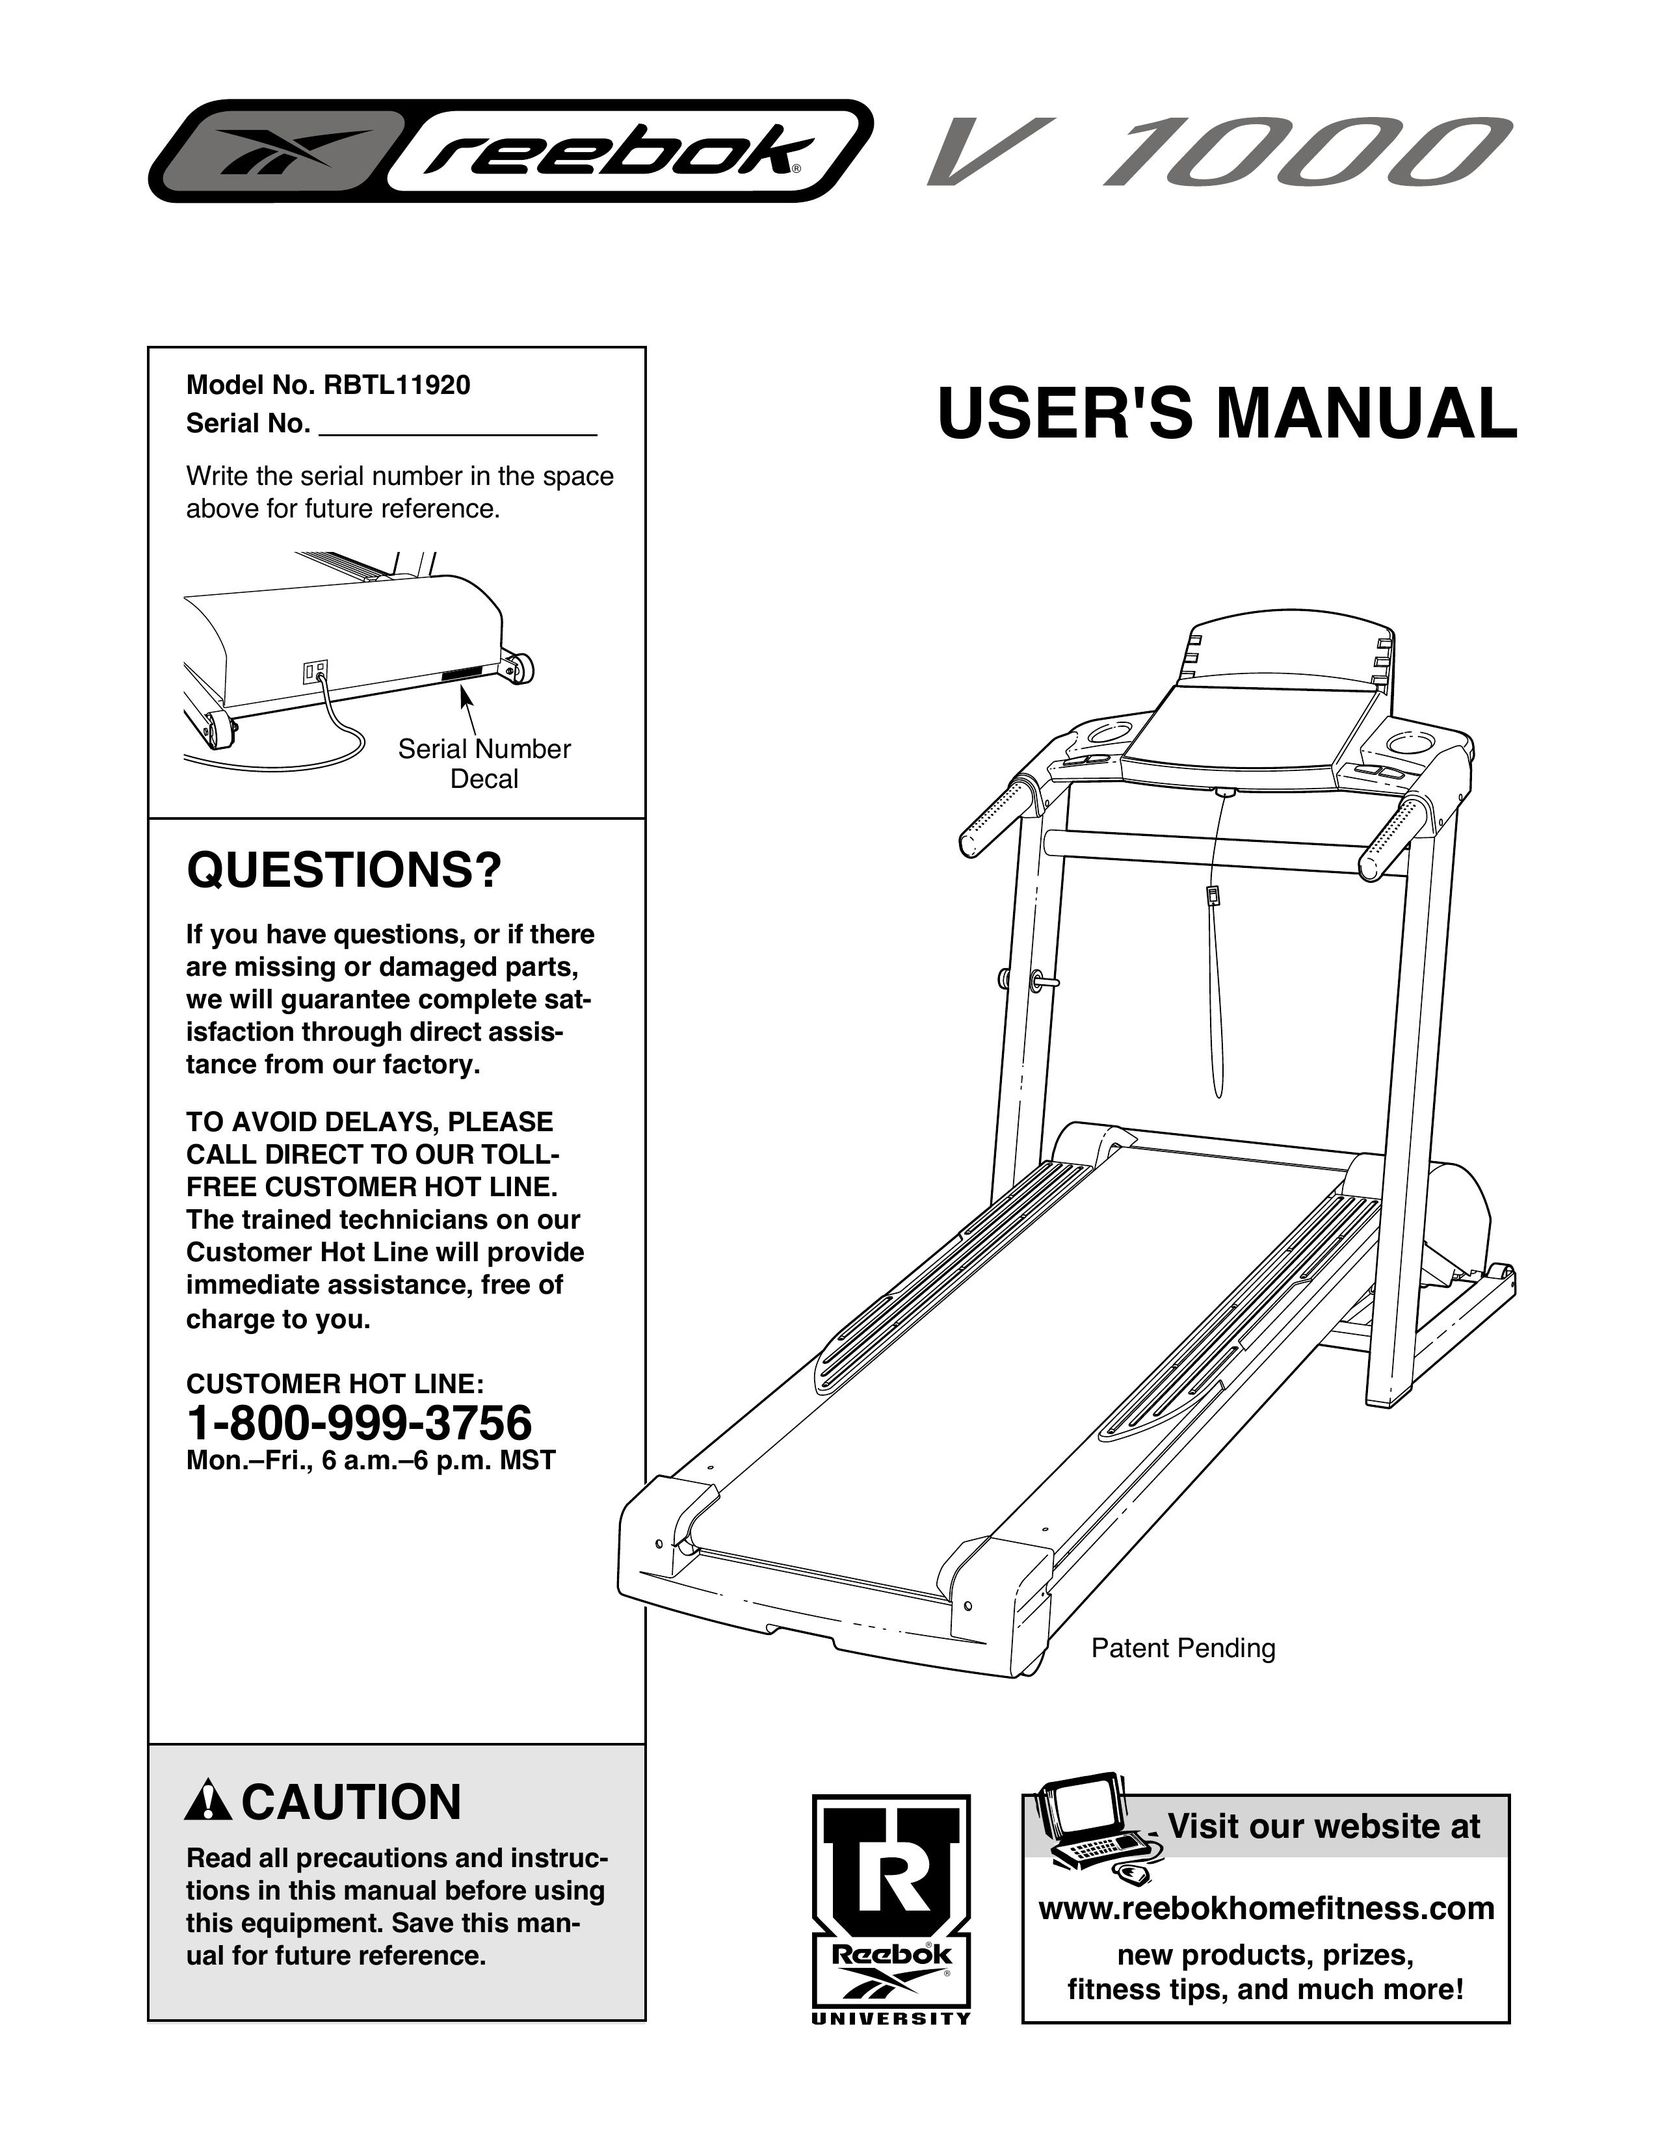 Reebok Fitness RBTL11920 Treadmill User Manual